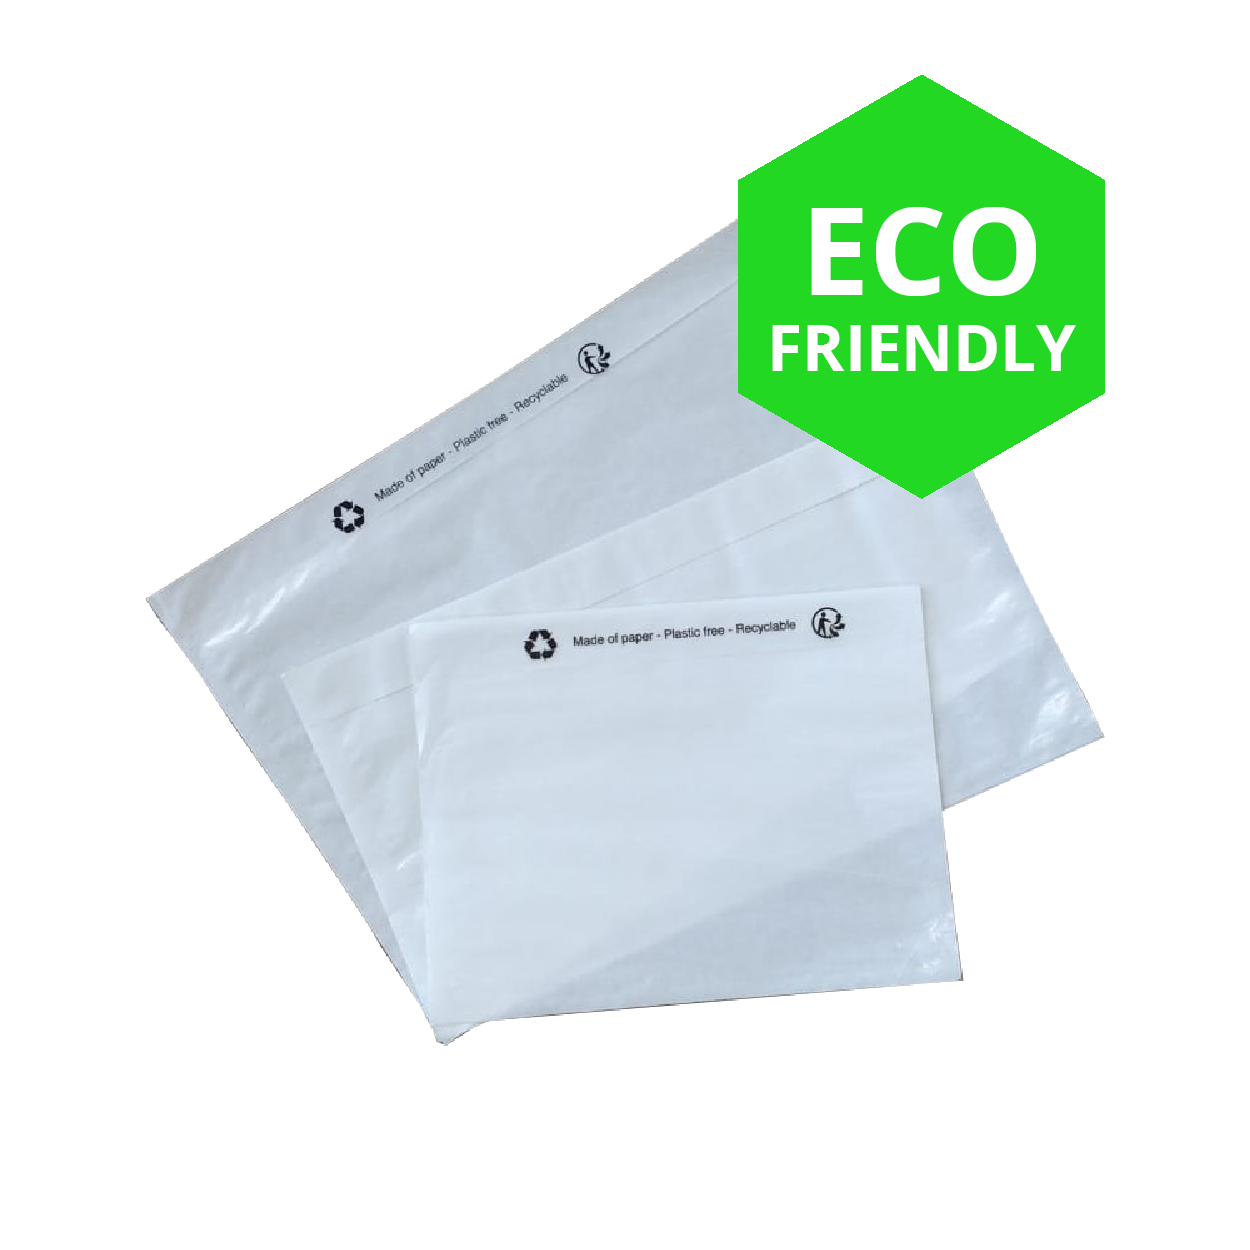 Sanctie spreken Meesterschap Paklijst enveloppen papier C6 eco friendly - Verpakkingenonline.nl